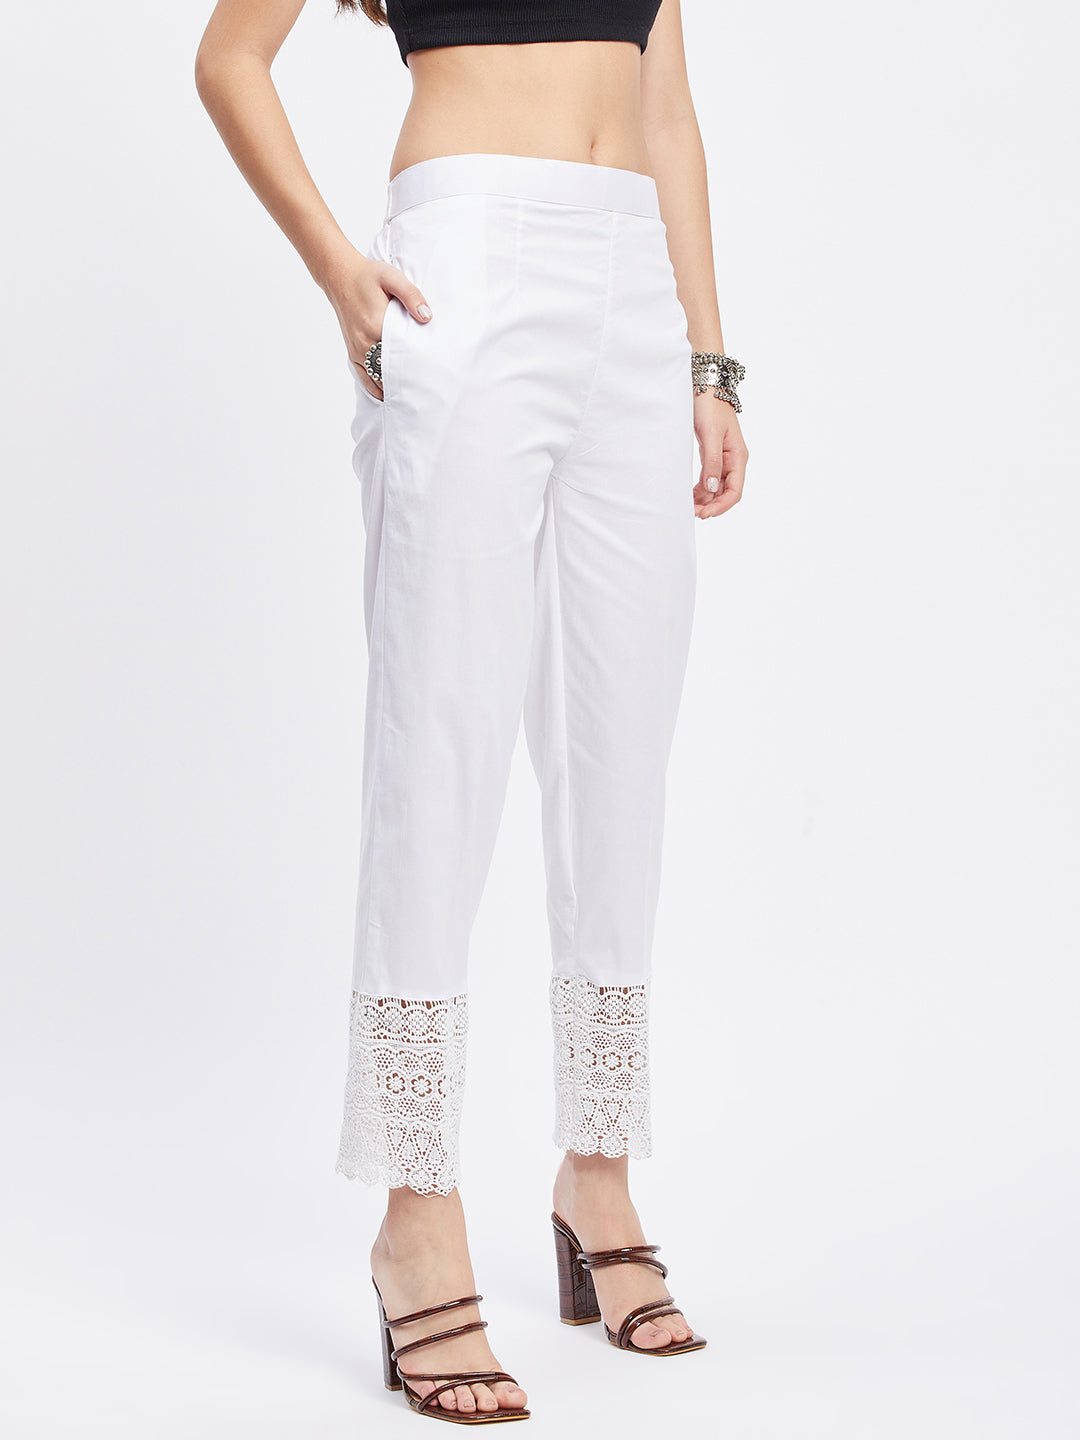 Off-White Solid Hem Design Straight Trouser